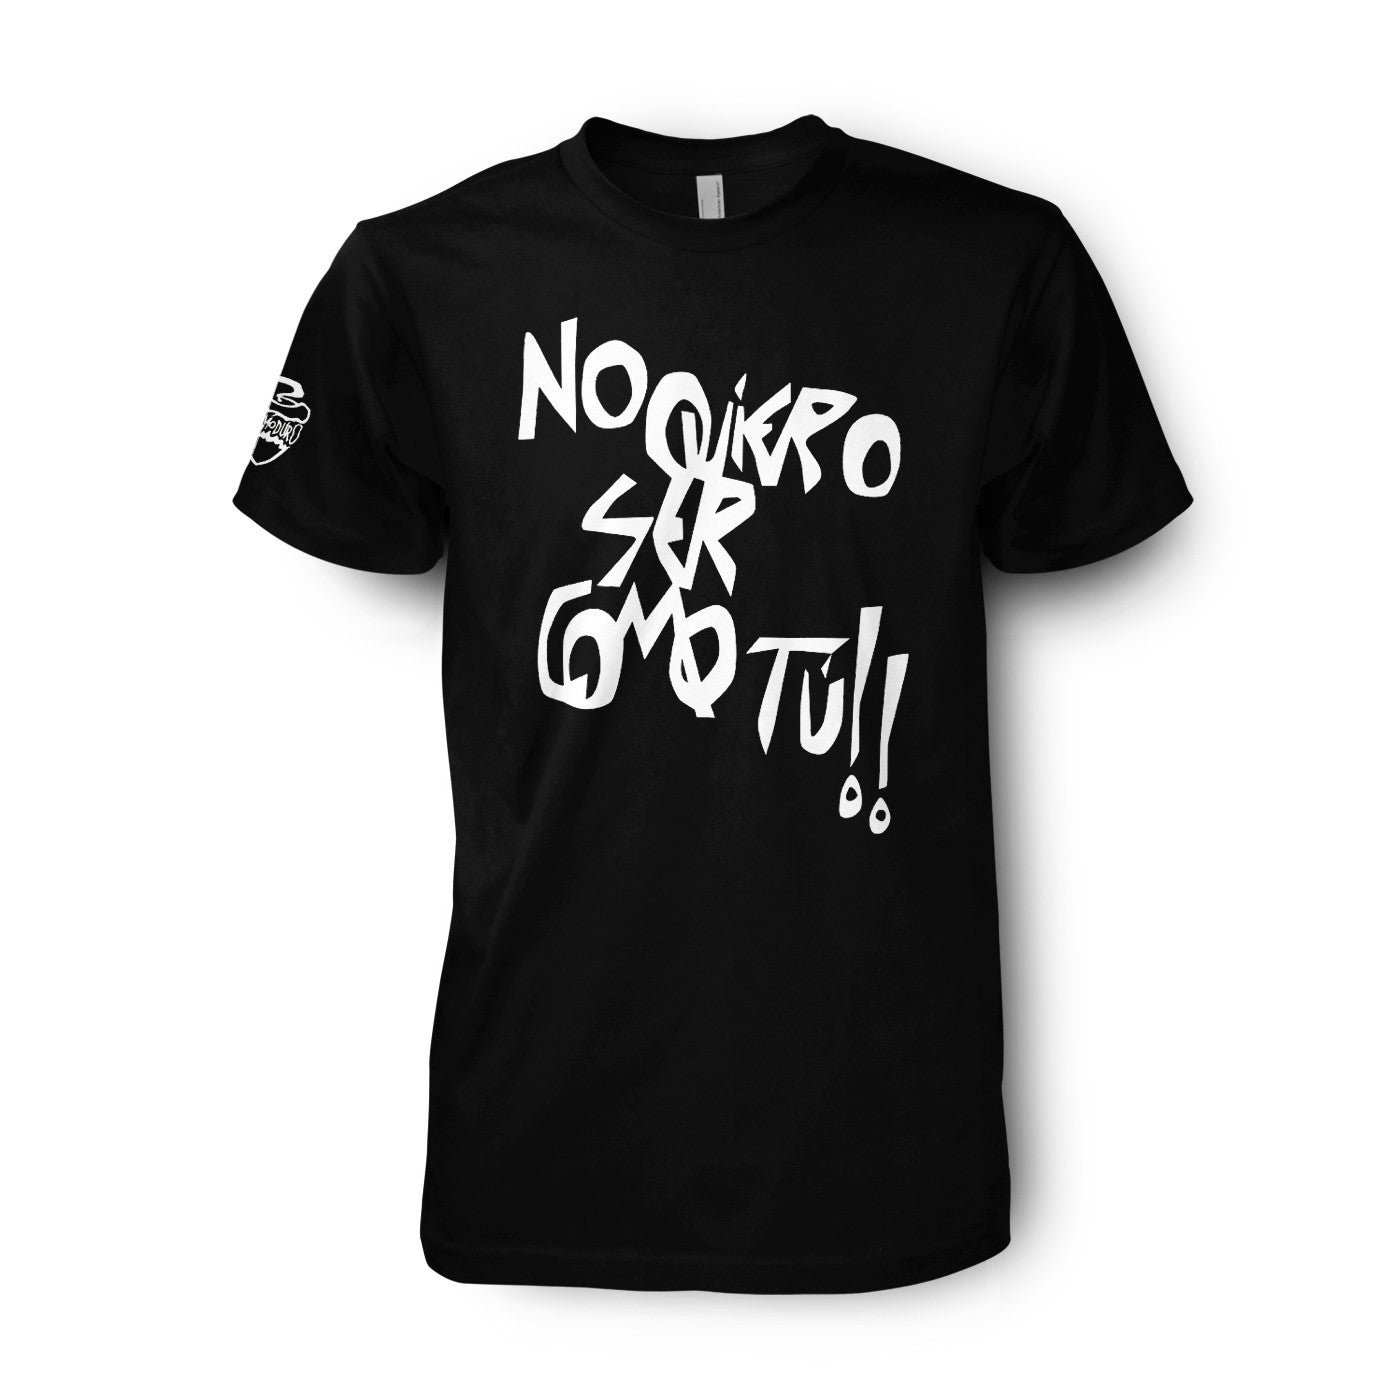 Discografía Extremoduro + camiseta "No quiero ser como tú"